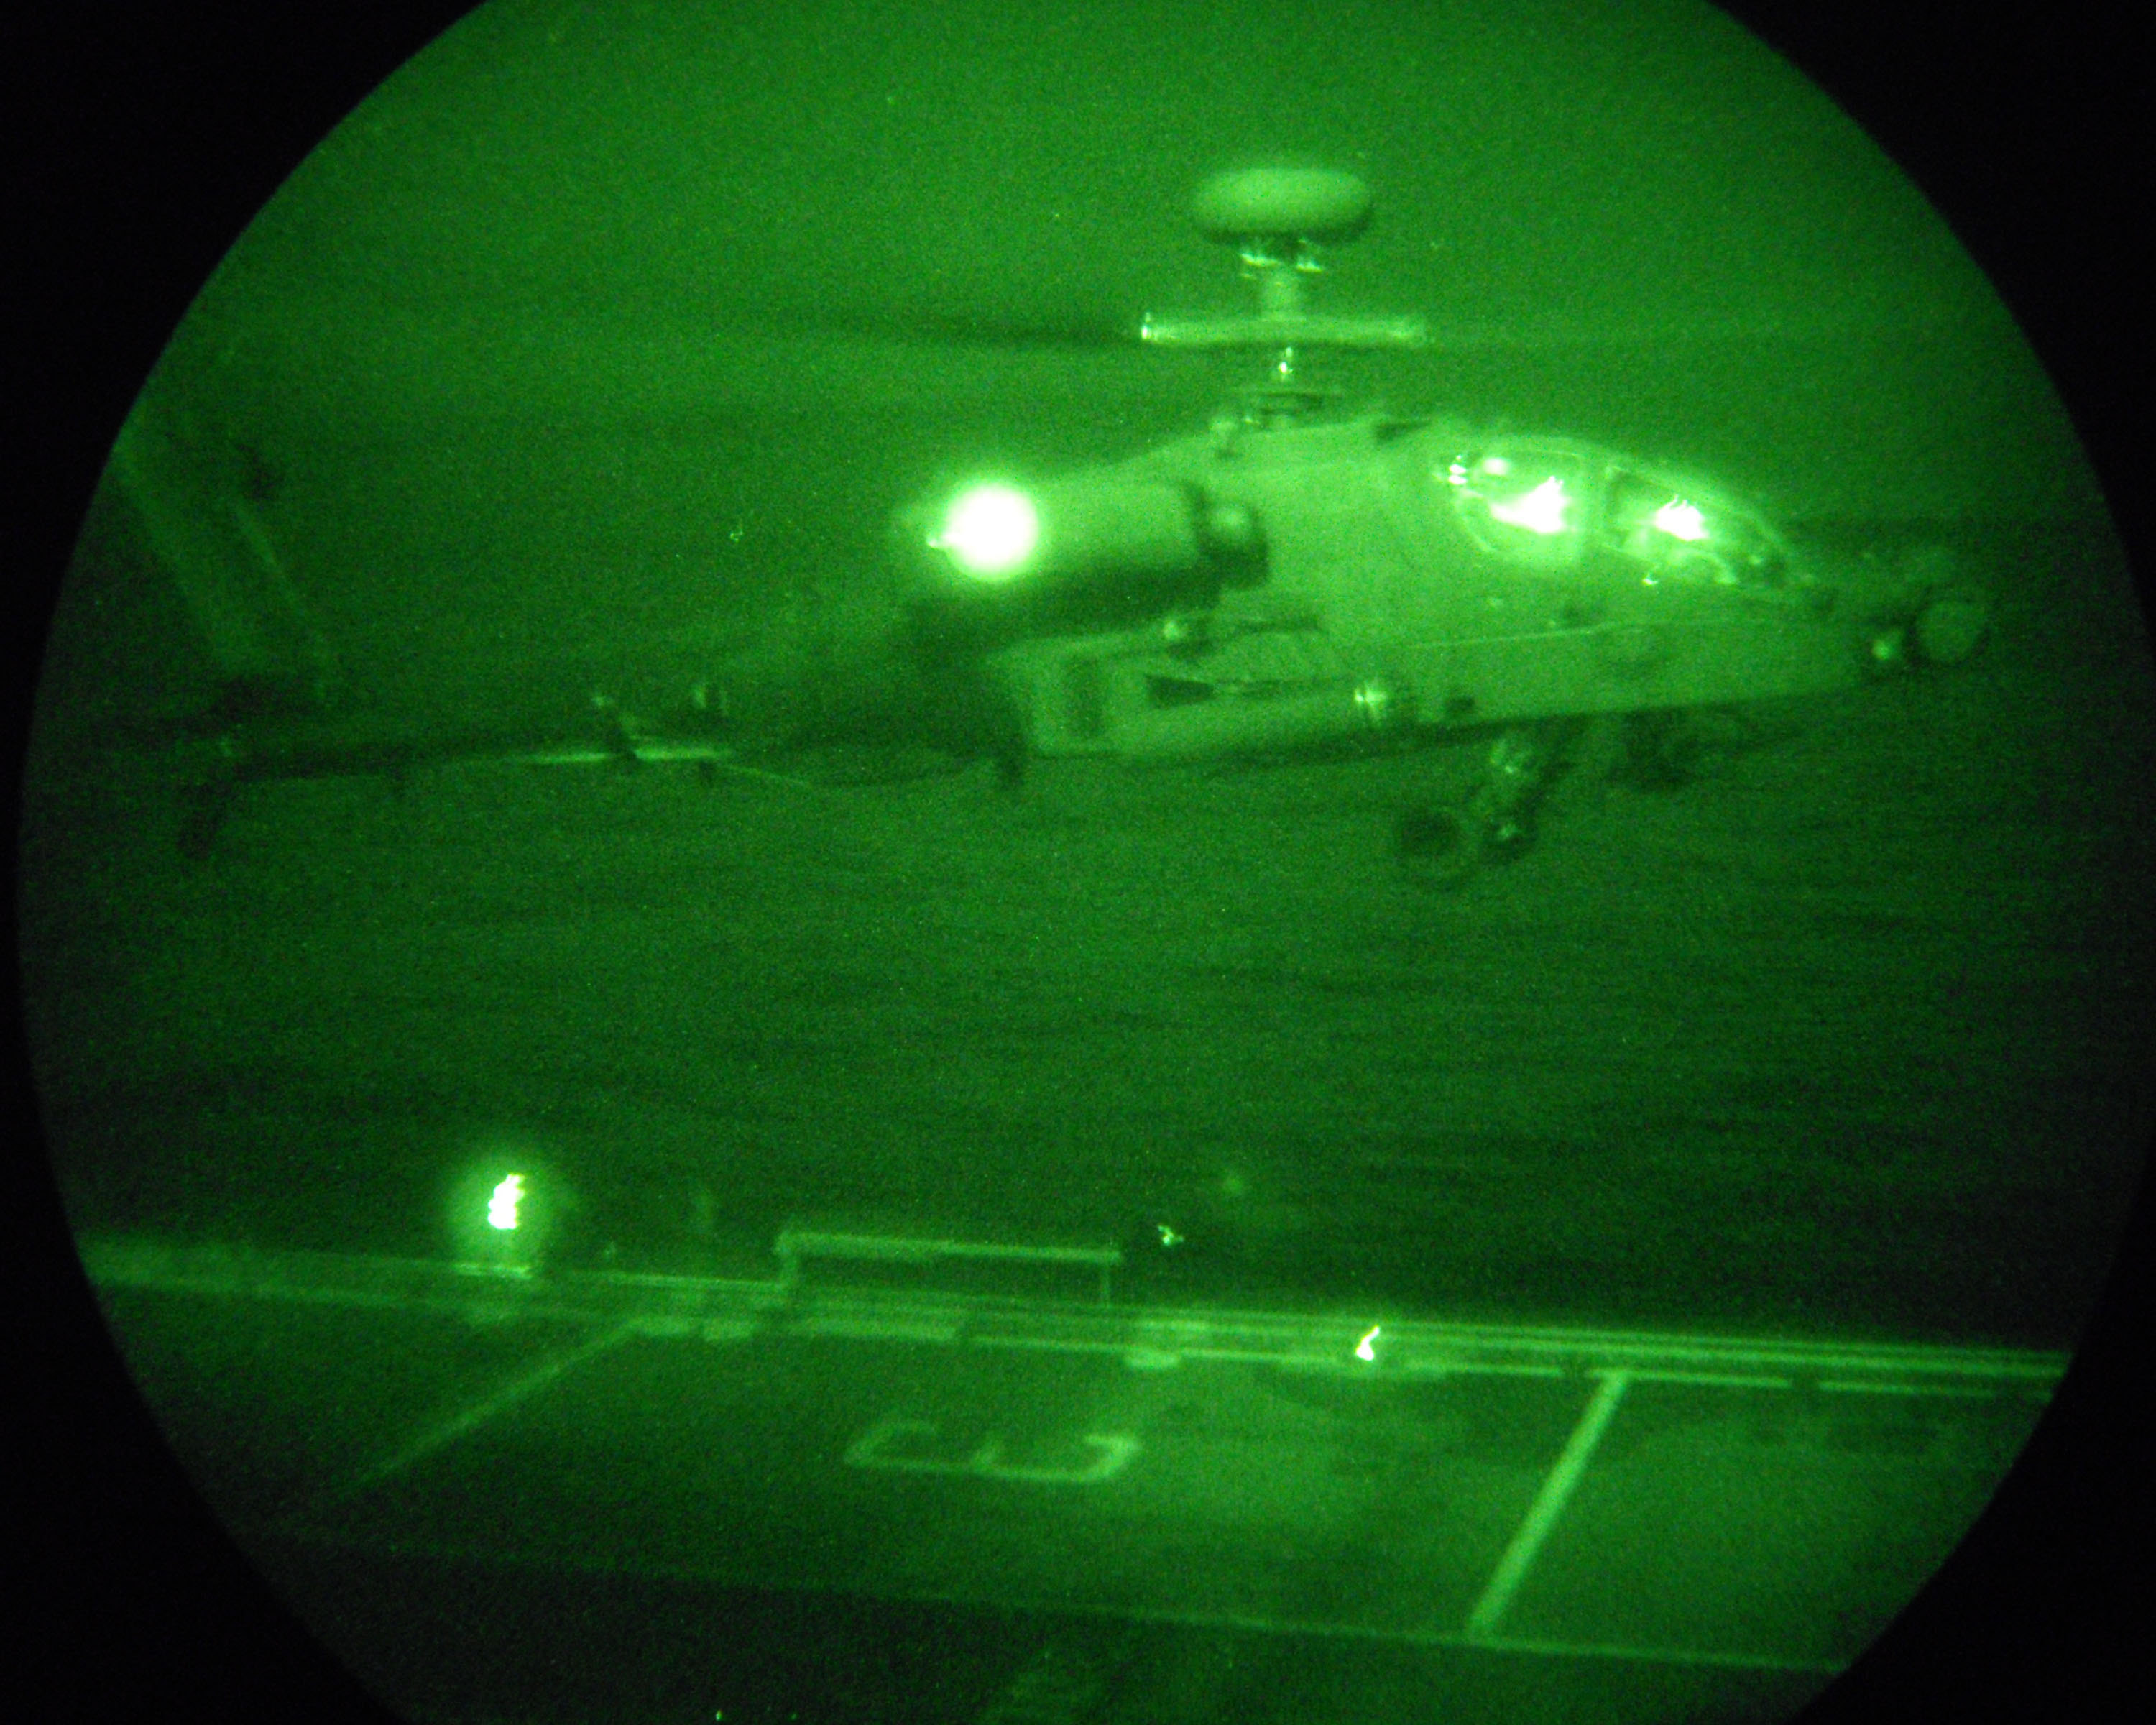 AH-64 Syria encroaching on Israel